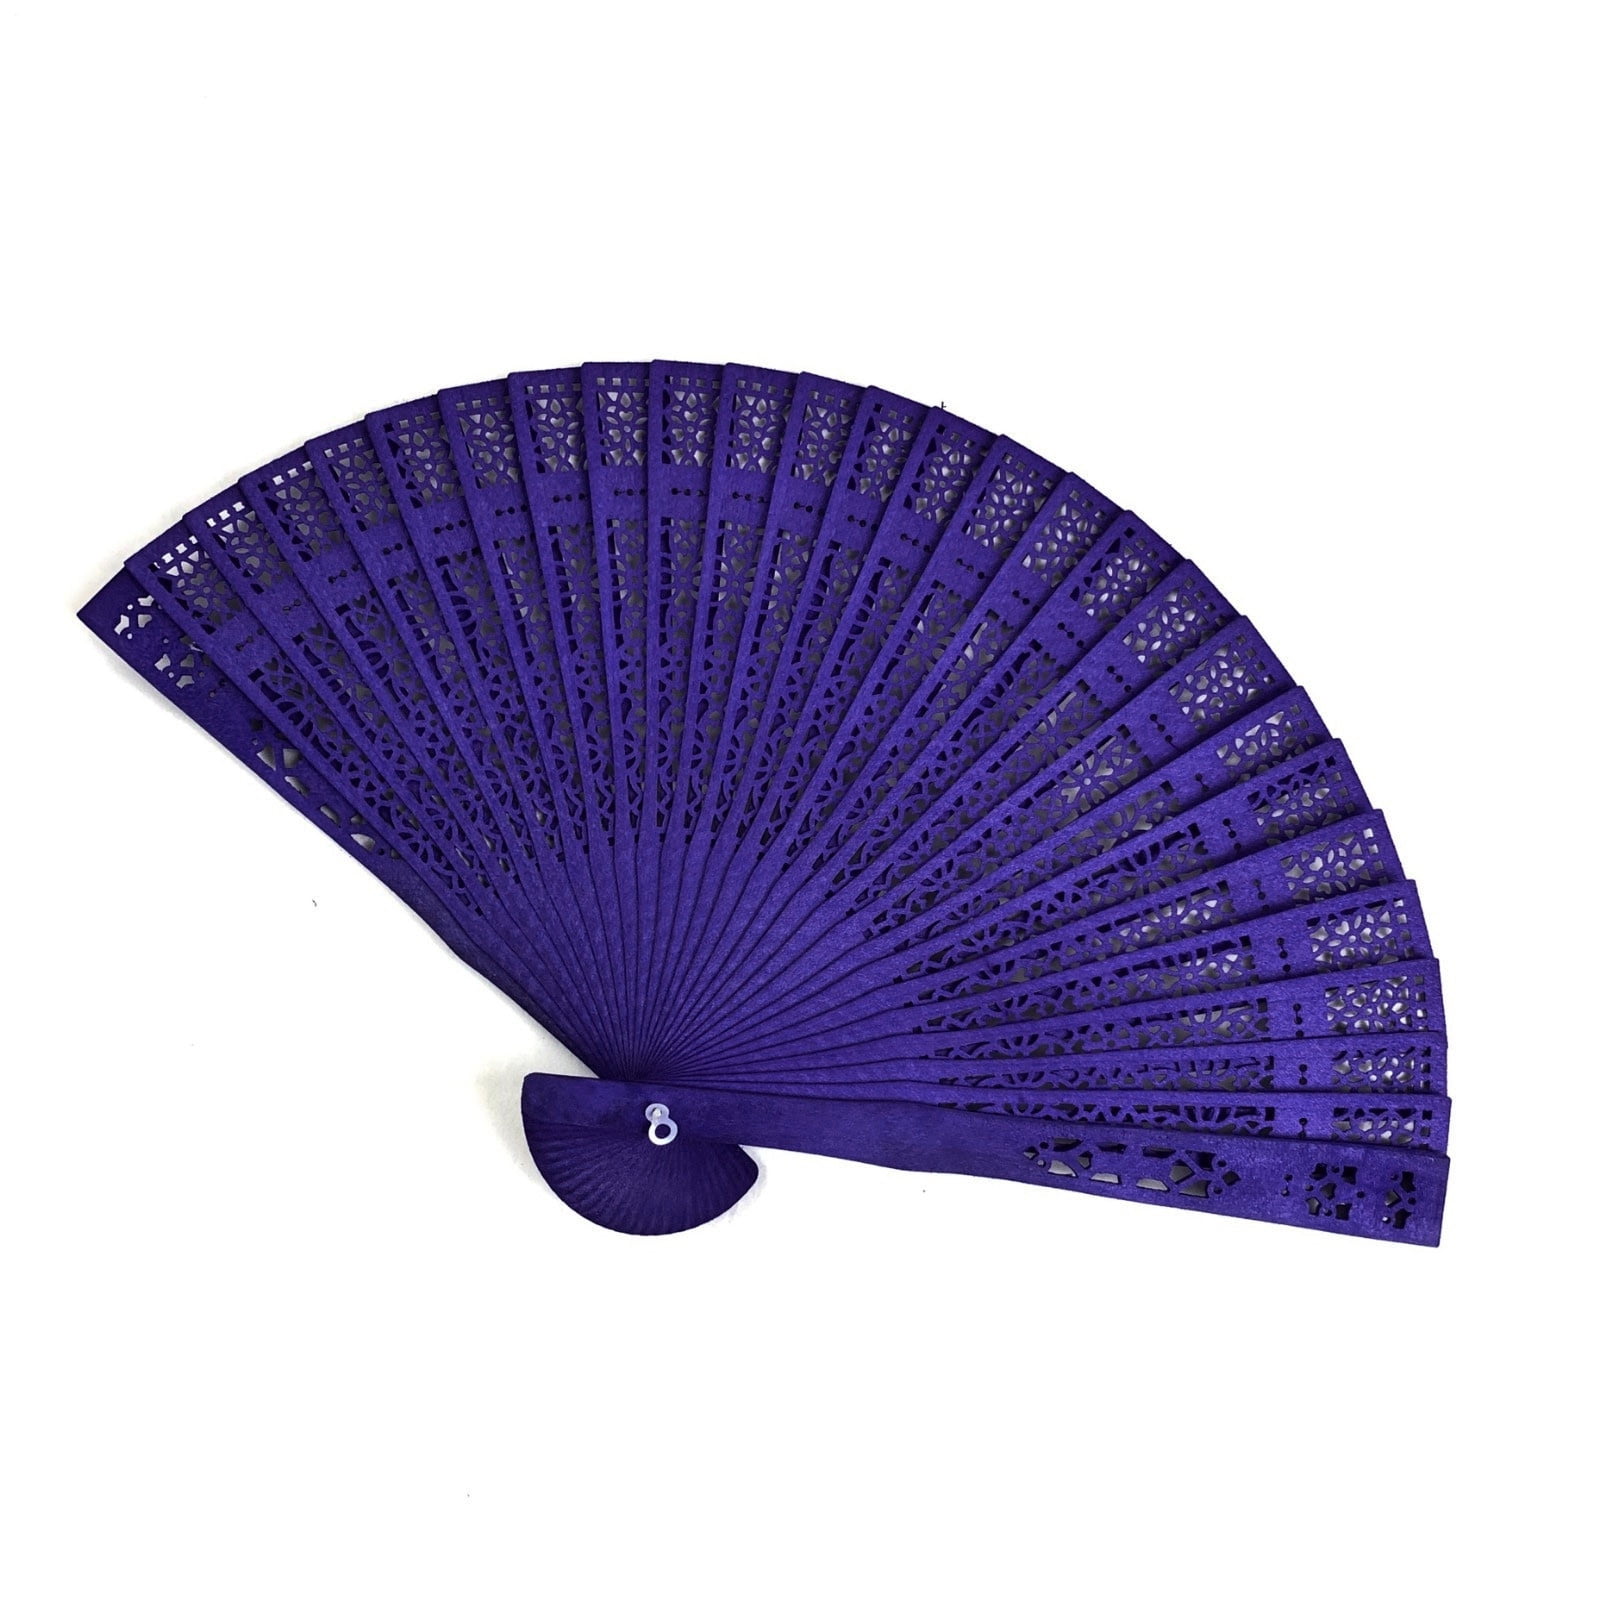 The Literary Hand Fan Details about   Purple Book Fan 